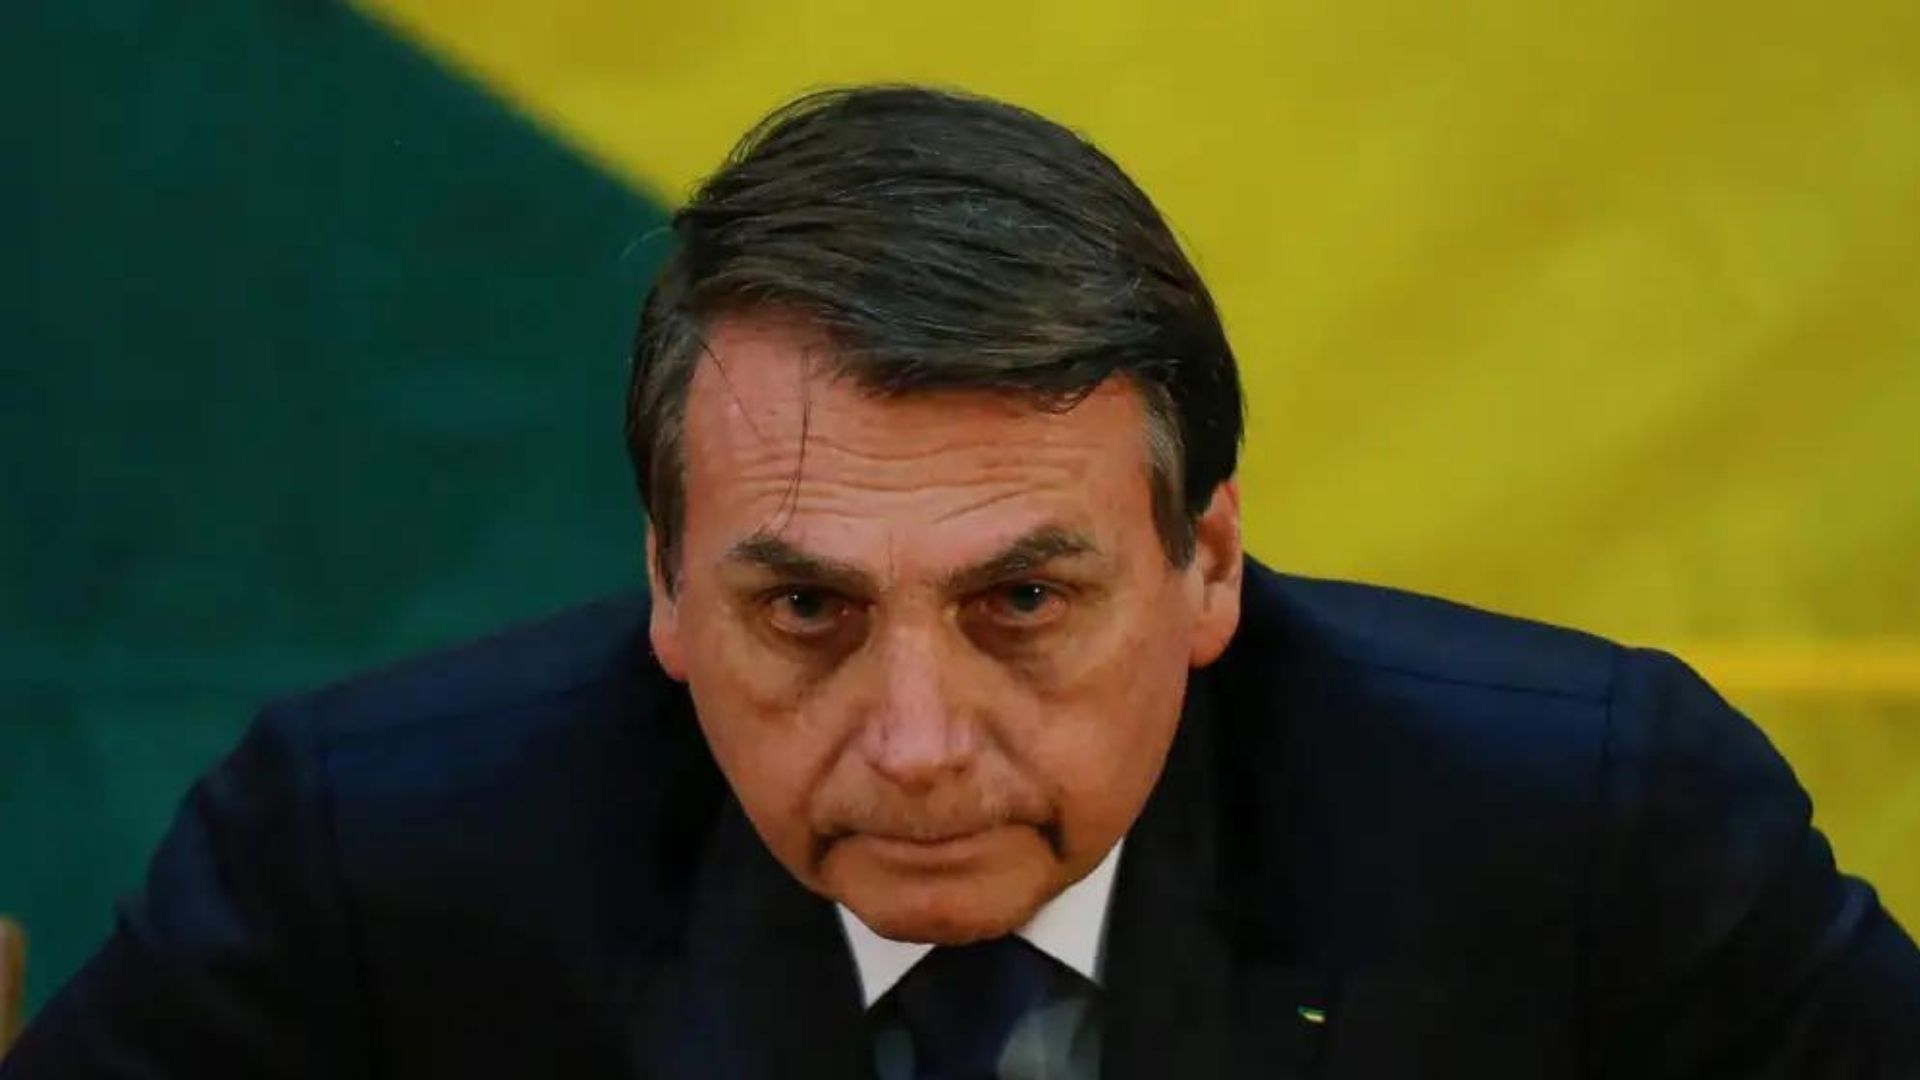 Quase um terço dos eleitores de Bolsonaro desaprovam governo, diz pesquisa